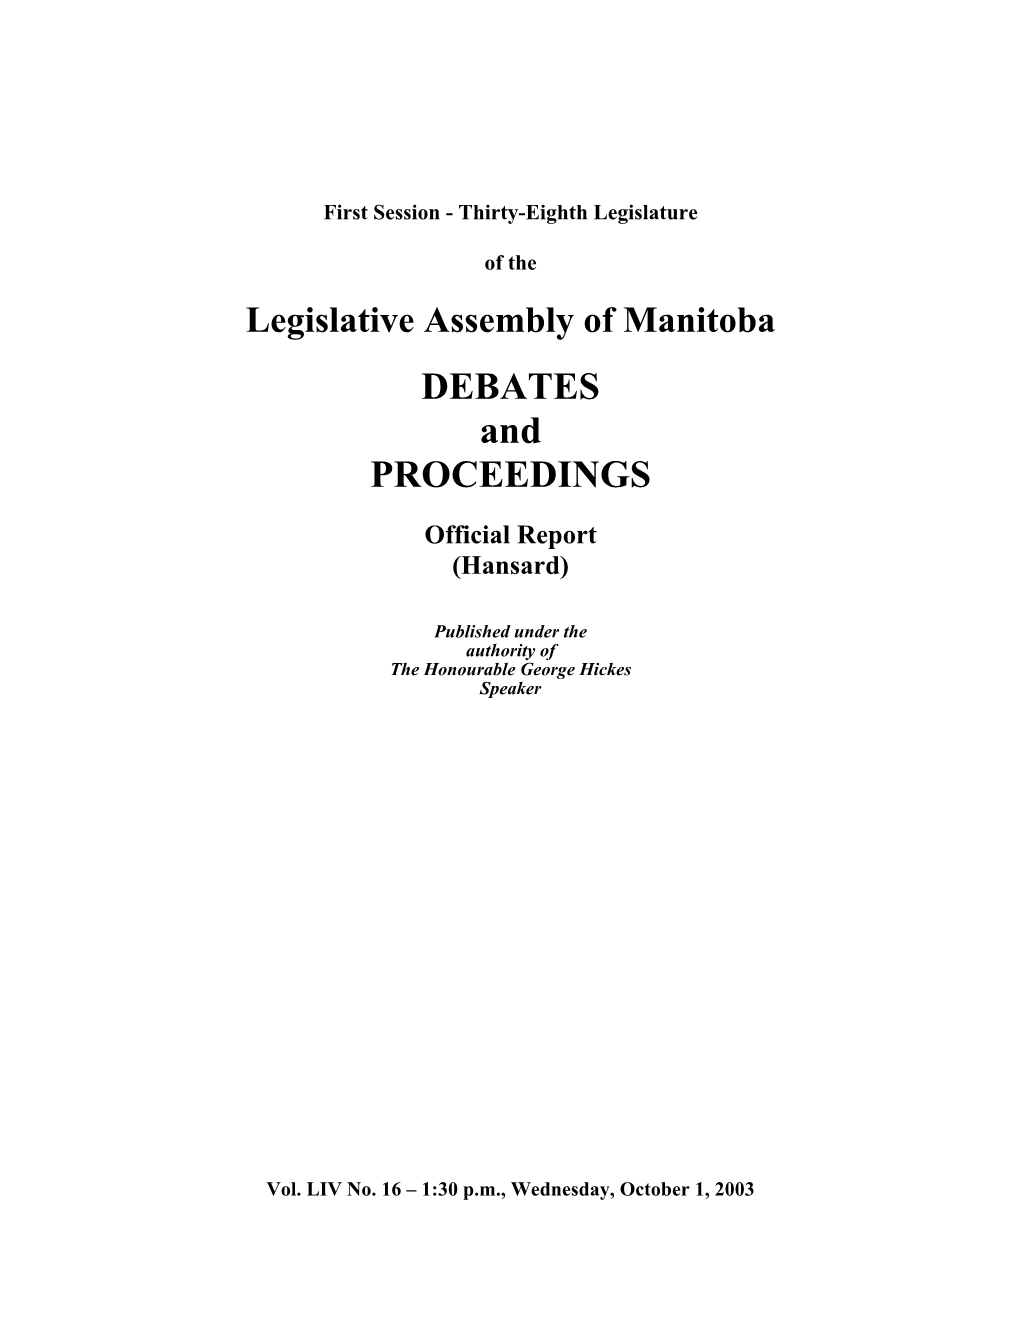 1486 LEGISLATIVE ASSEMBLY of MANITOBA October 1, 2003